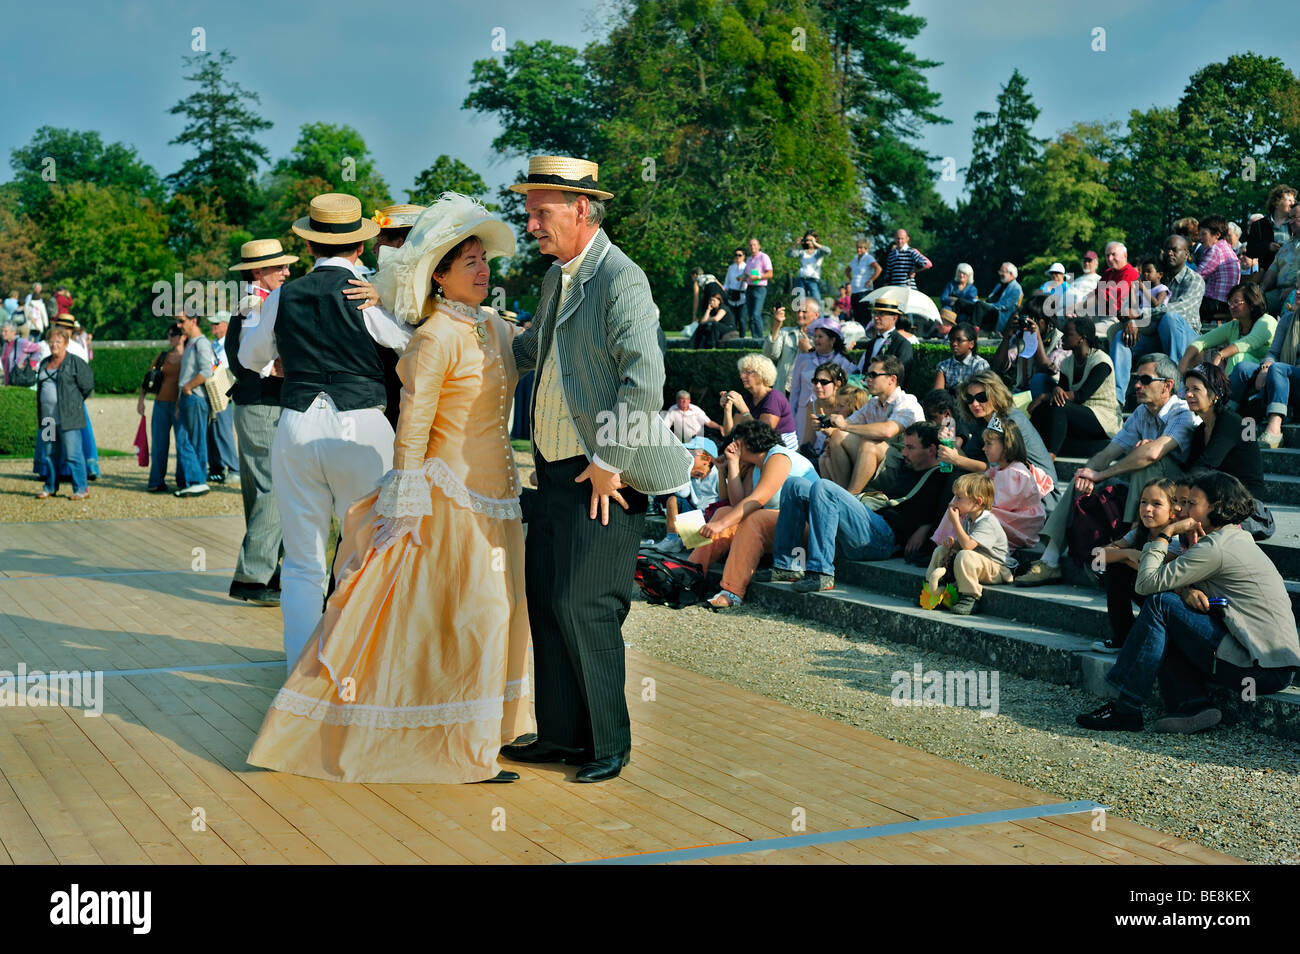 Paris, Frankreich - Publikum von Touristen, die Ballveranstaltung beobachten, in Kostüm gekleidet, Fancy Dress, Französisch Paare tanzen, Frauen Hüte, alter Mann, Gruppe Stockfoto